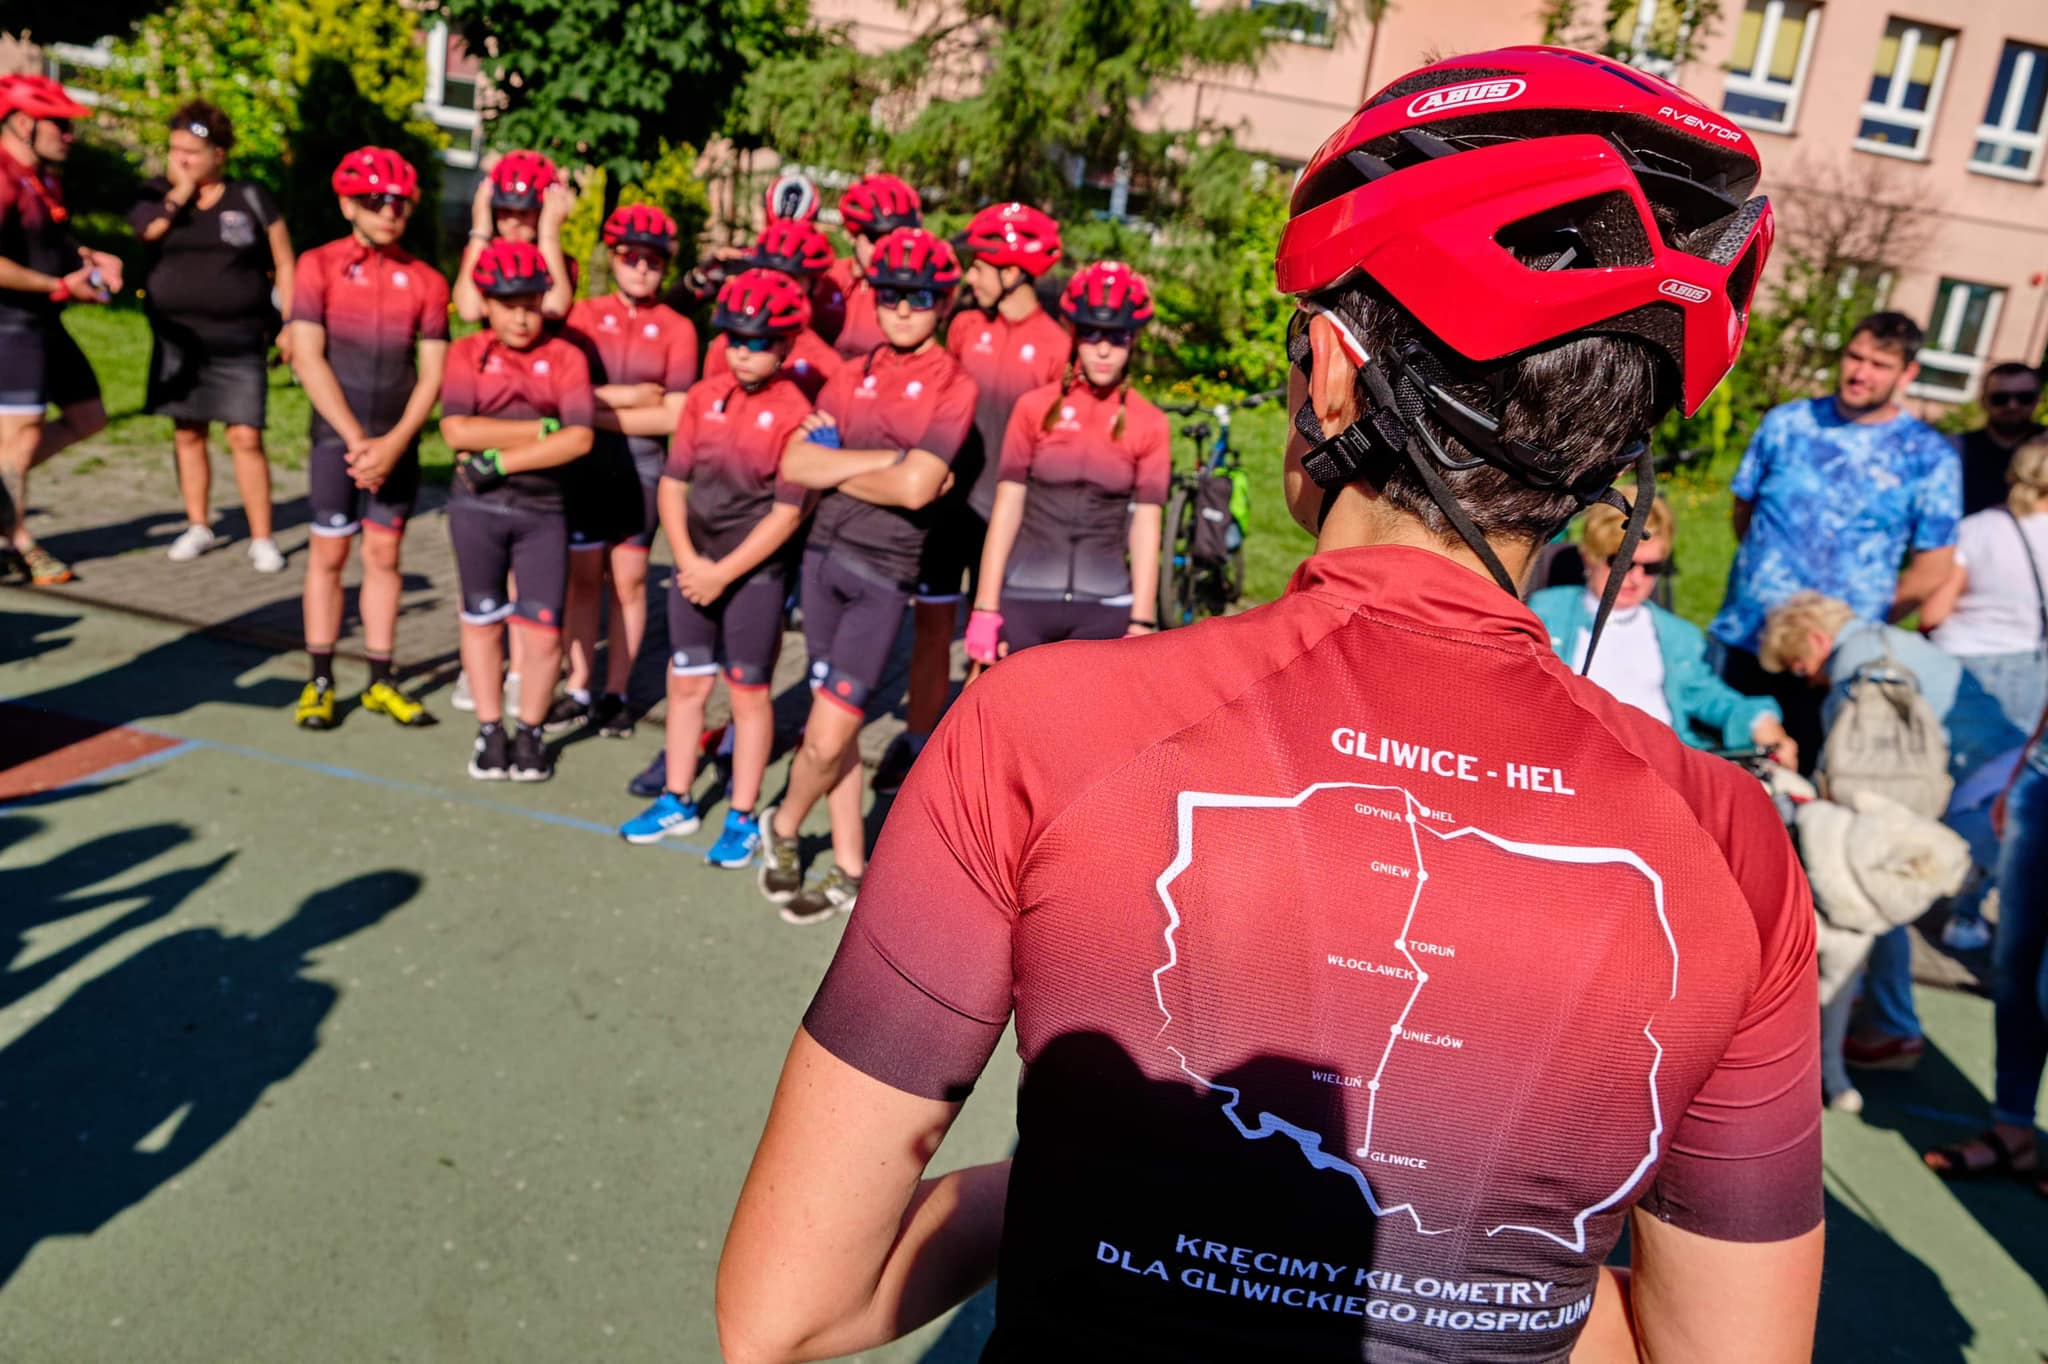 grupa w czerwonych rowerowych koszulkach